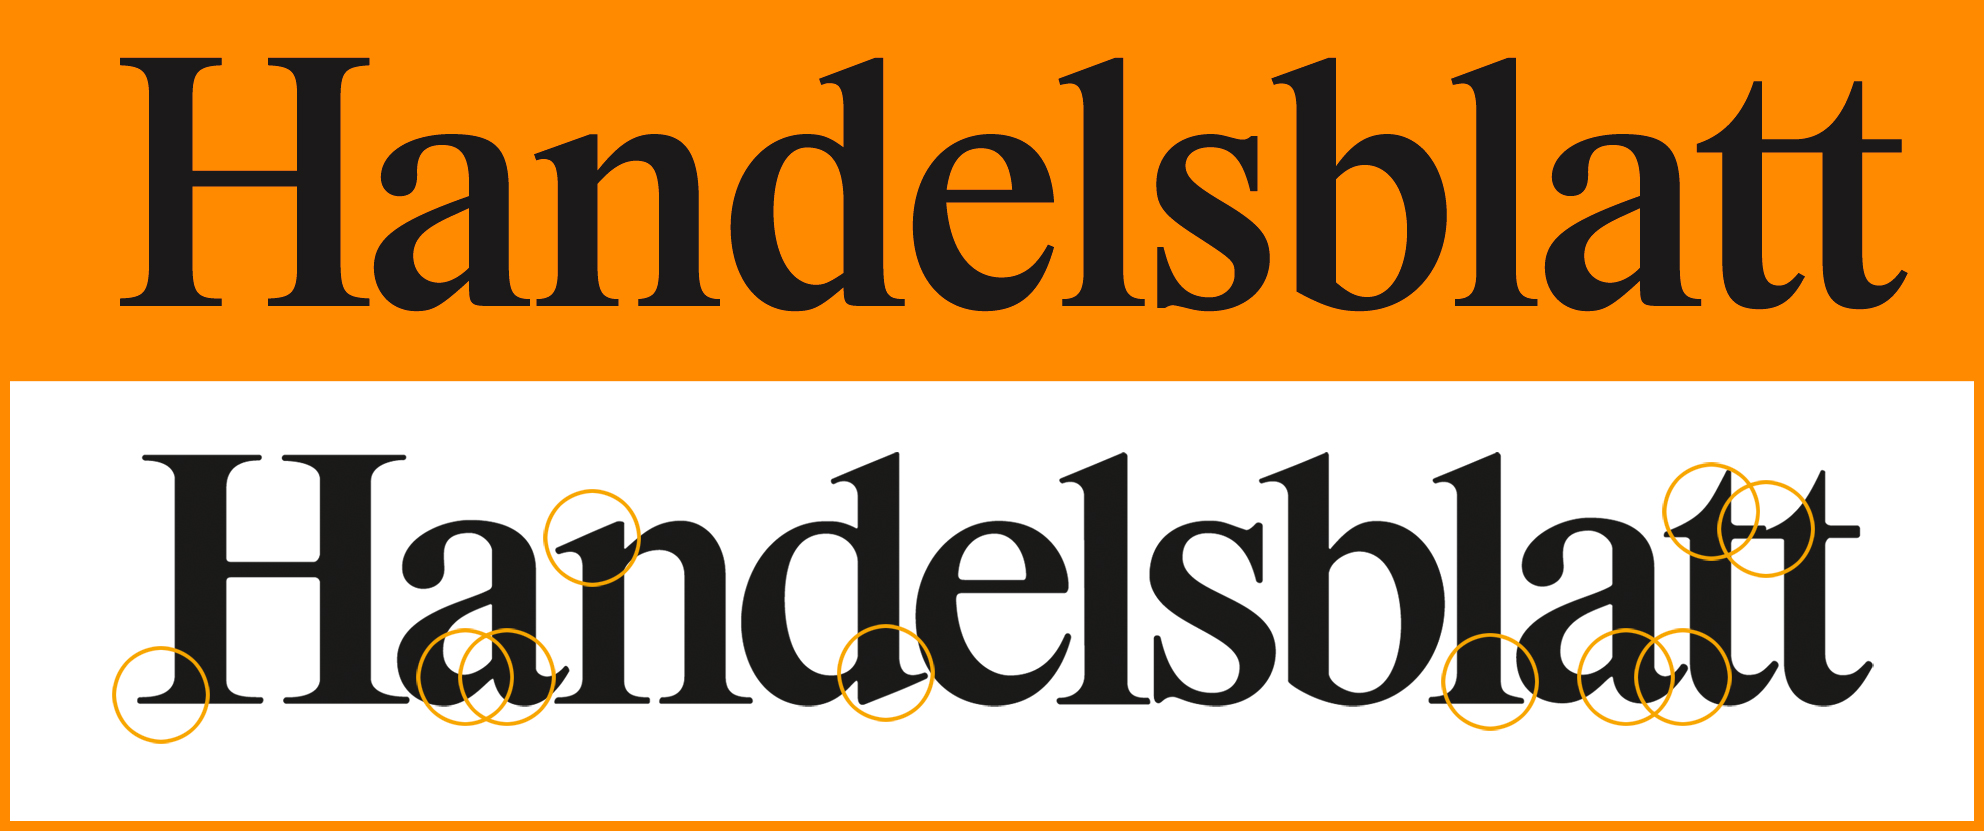 Amerikai cégek uralják a Handelsblatt top 100-as világranglistáját